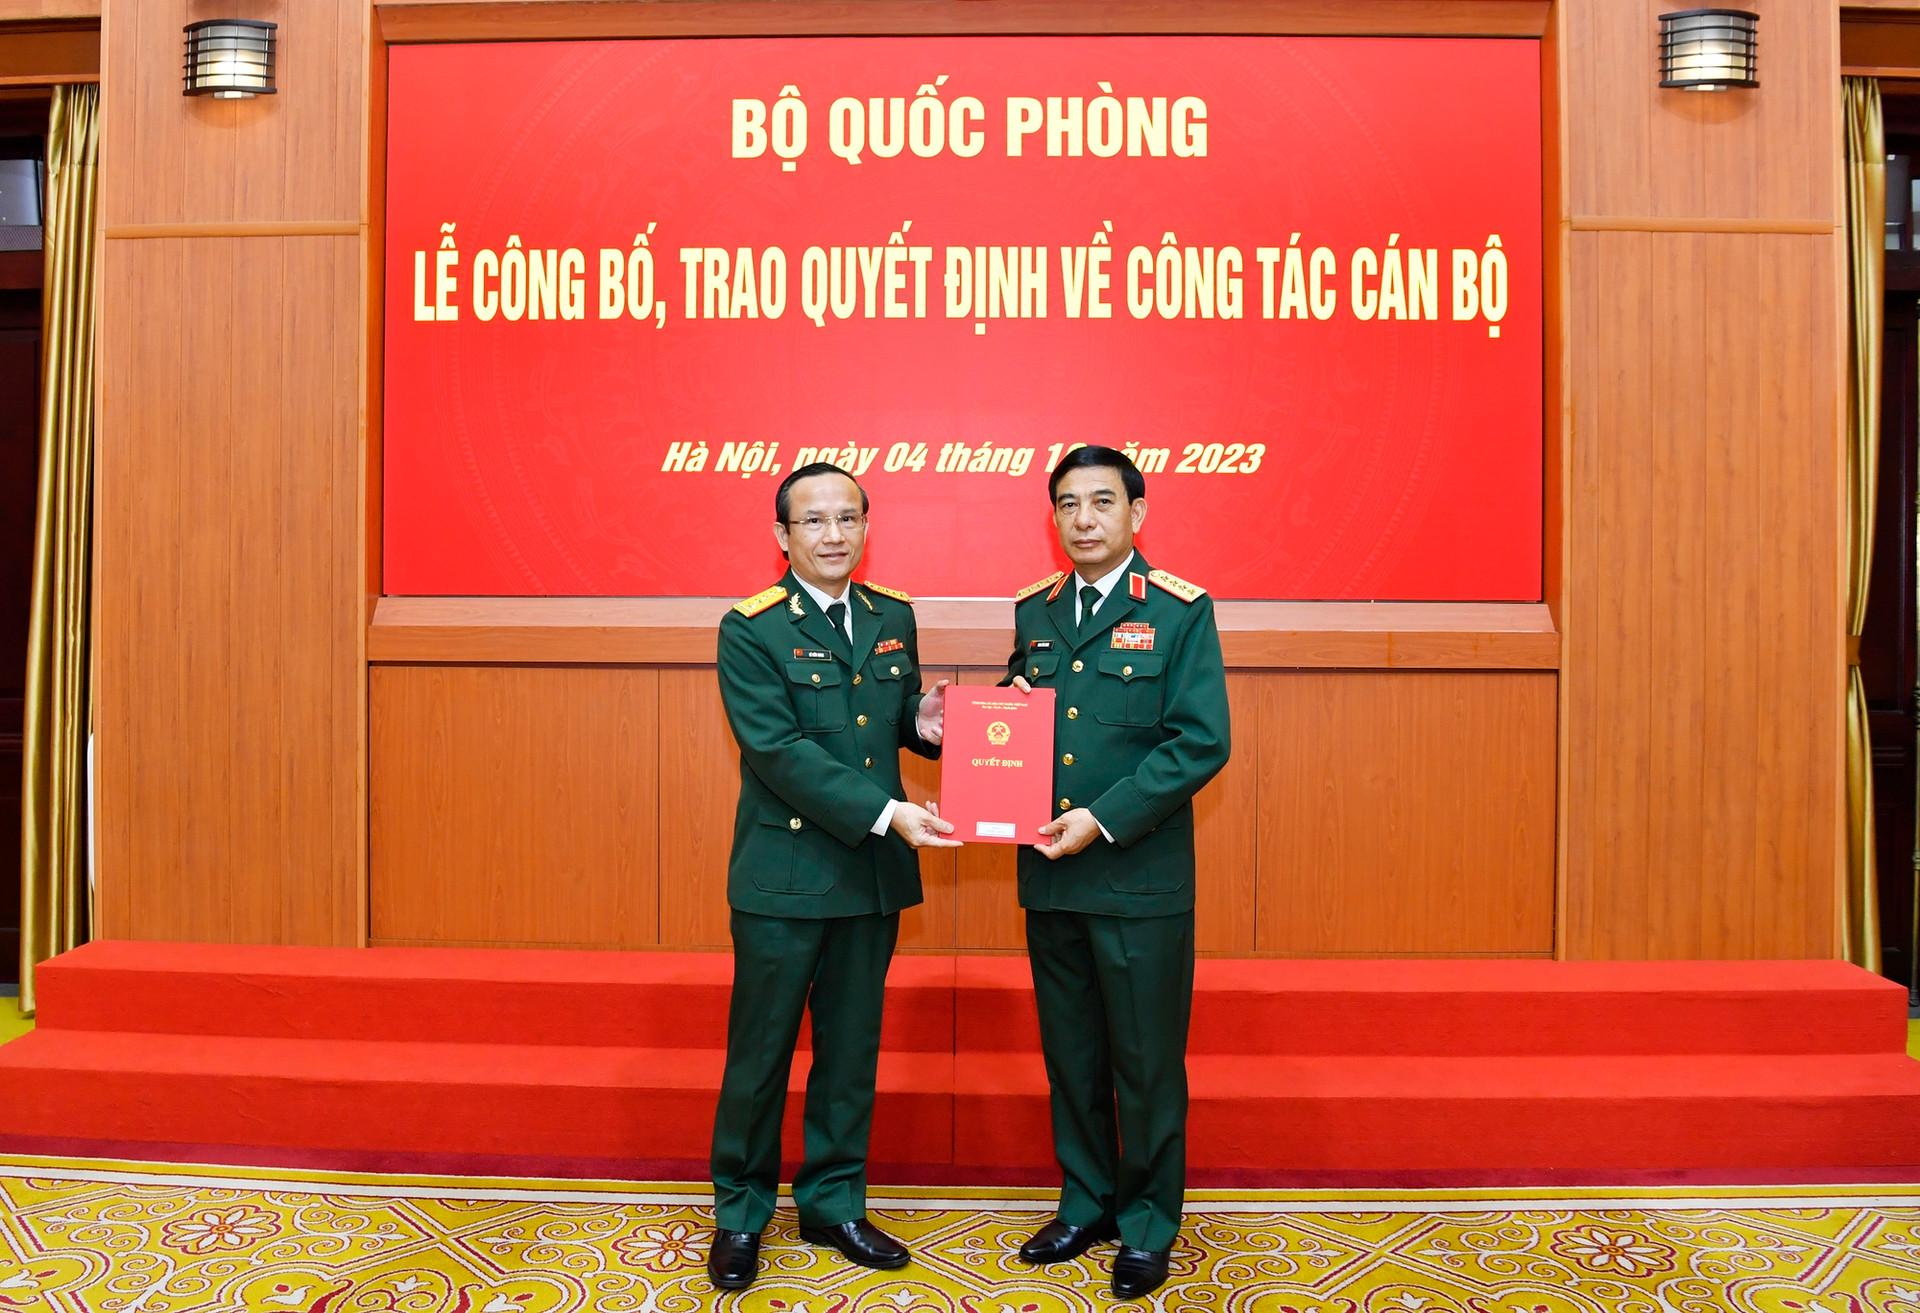 Đại tá Lê Hữu Song là Giám đốc Bệnh viện Trung ương Quân đội 108 - Ảnh 1.